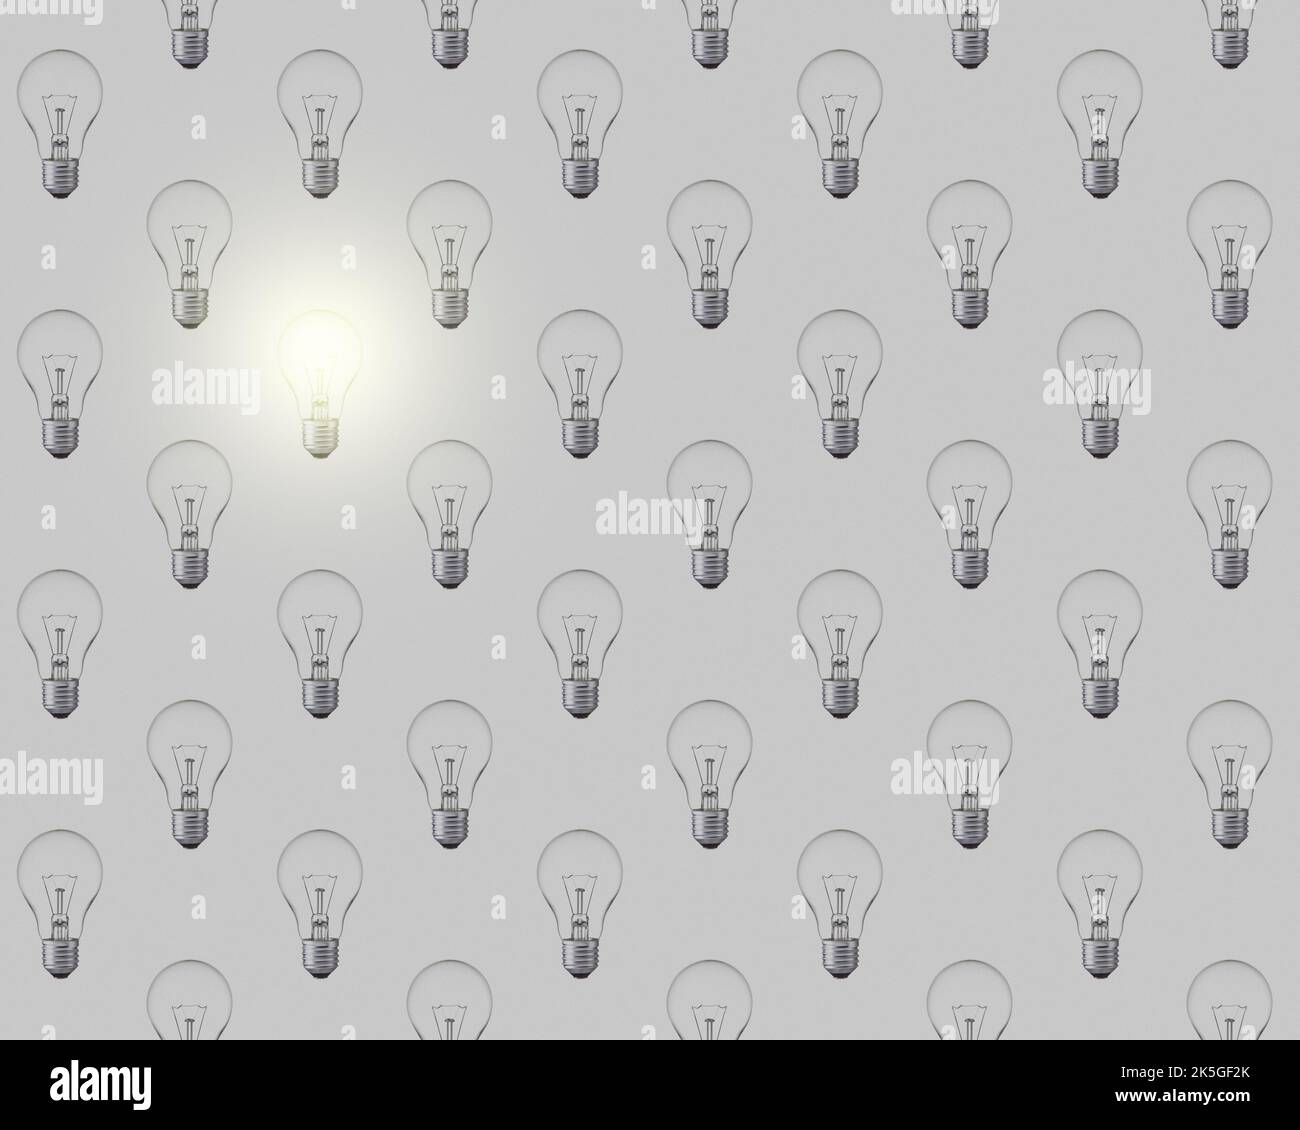 Modèle sans couture des ampoules sur fond gris, une seule ampoule allumée et allumée. Illustration du concept d'économie d'énergie et d'économie d'énergie. Banque D'Images